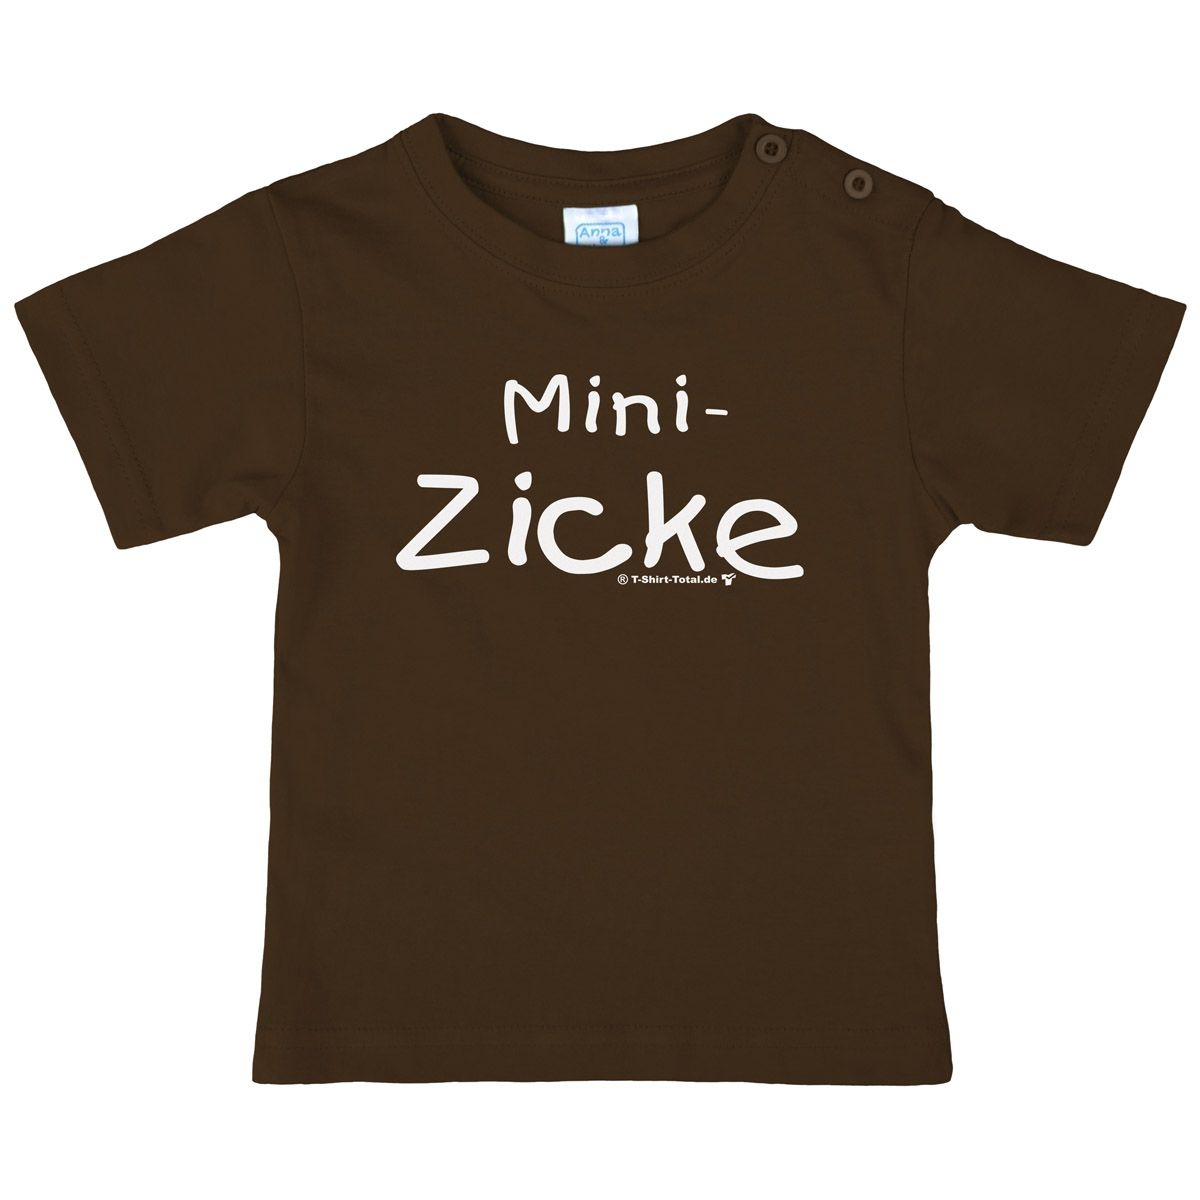 Mini Zicke Kinder T-Shirt braun 80 / 86